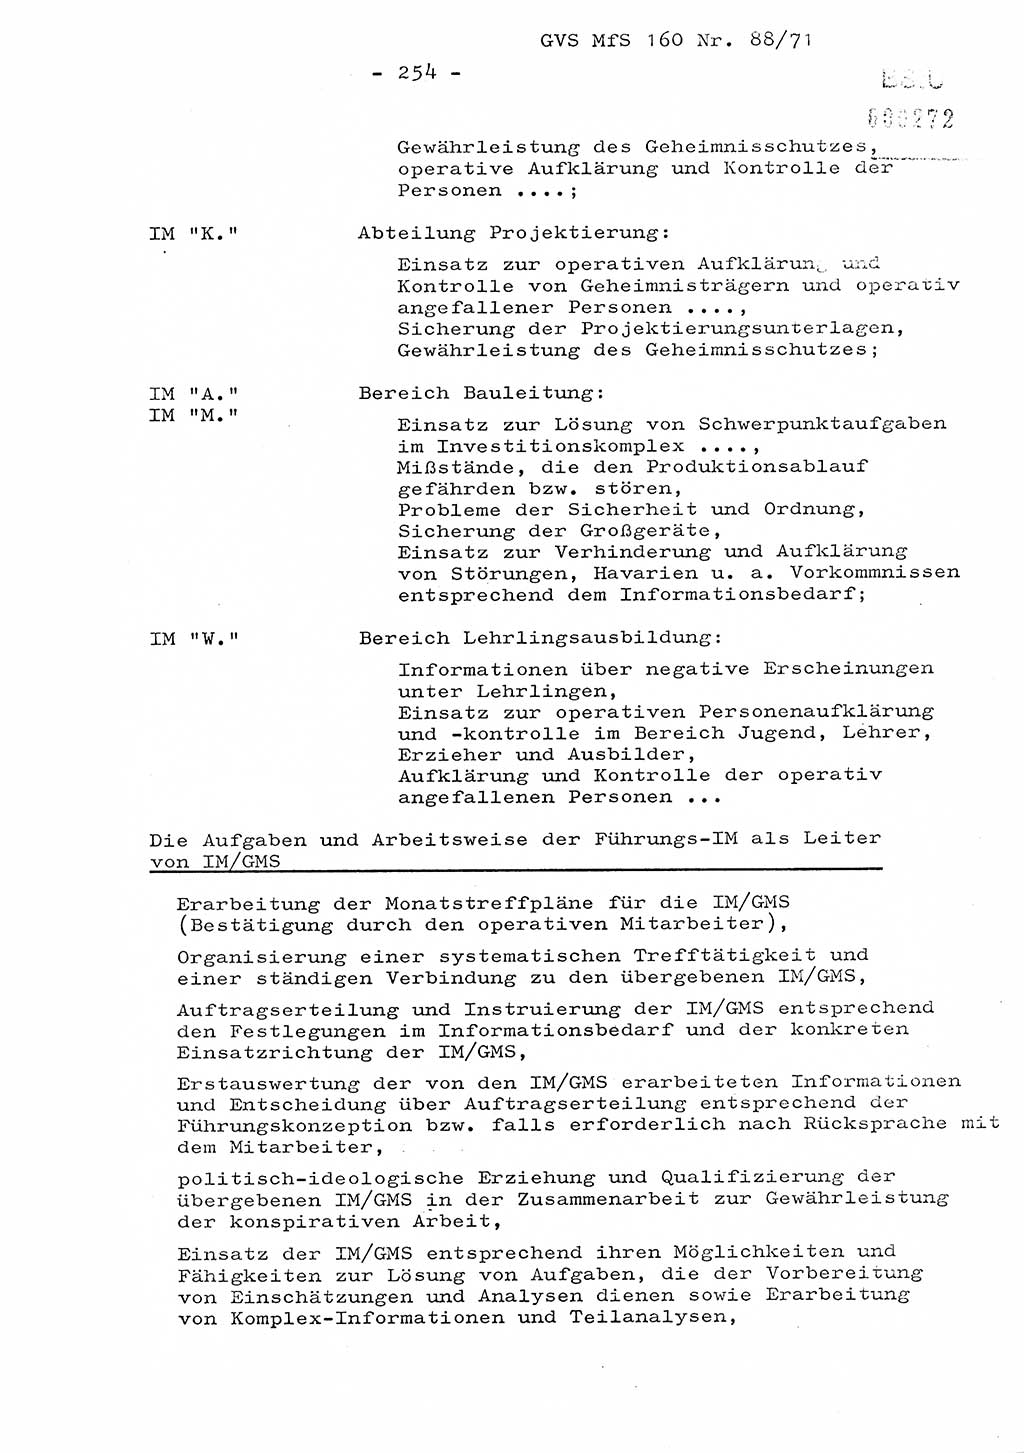 Dissertation Oberstleutnant Josef Schwarz (BV Schwerin), Major Fritz Amm (JHS), Hauptmann Peter Gräßler (JHS), Ministerium für Staatssicherheit (MfS) [Deutsche Demokratische Republik (DDR)], Juristische Hochschule (JHS), Geheime Verschlußsache (GVS) 160-88/71, Potsdam 1972, Seite 254 (Diss. MfS DDR JHS GVS 160-88/71 1972, S. 254)